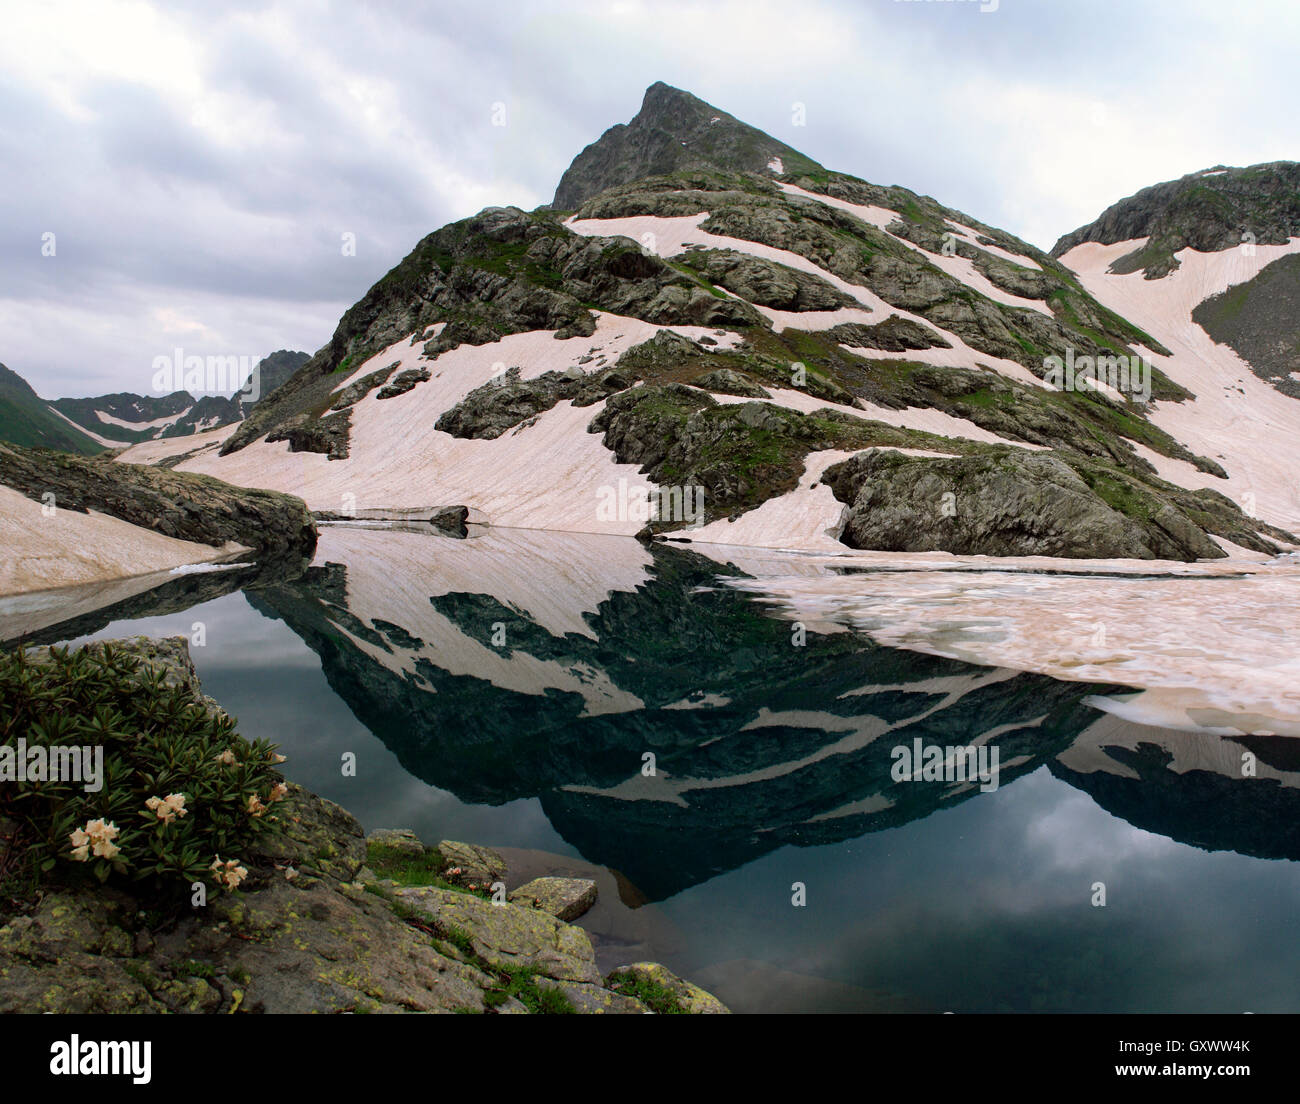 Imagen de espejo de los picos de las montañas están cubiertos de glaciares en el lago Foto de stock